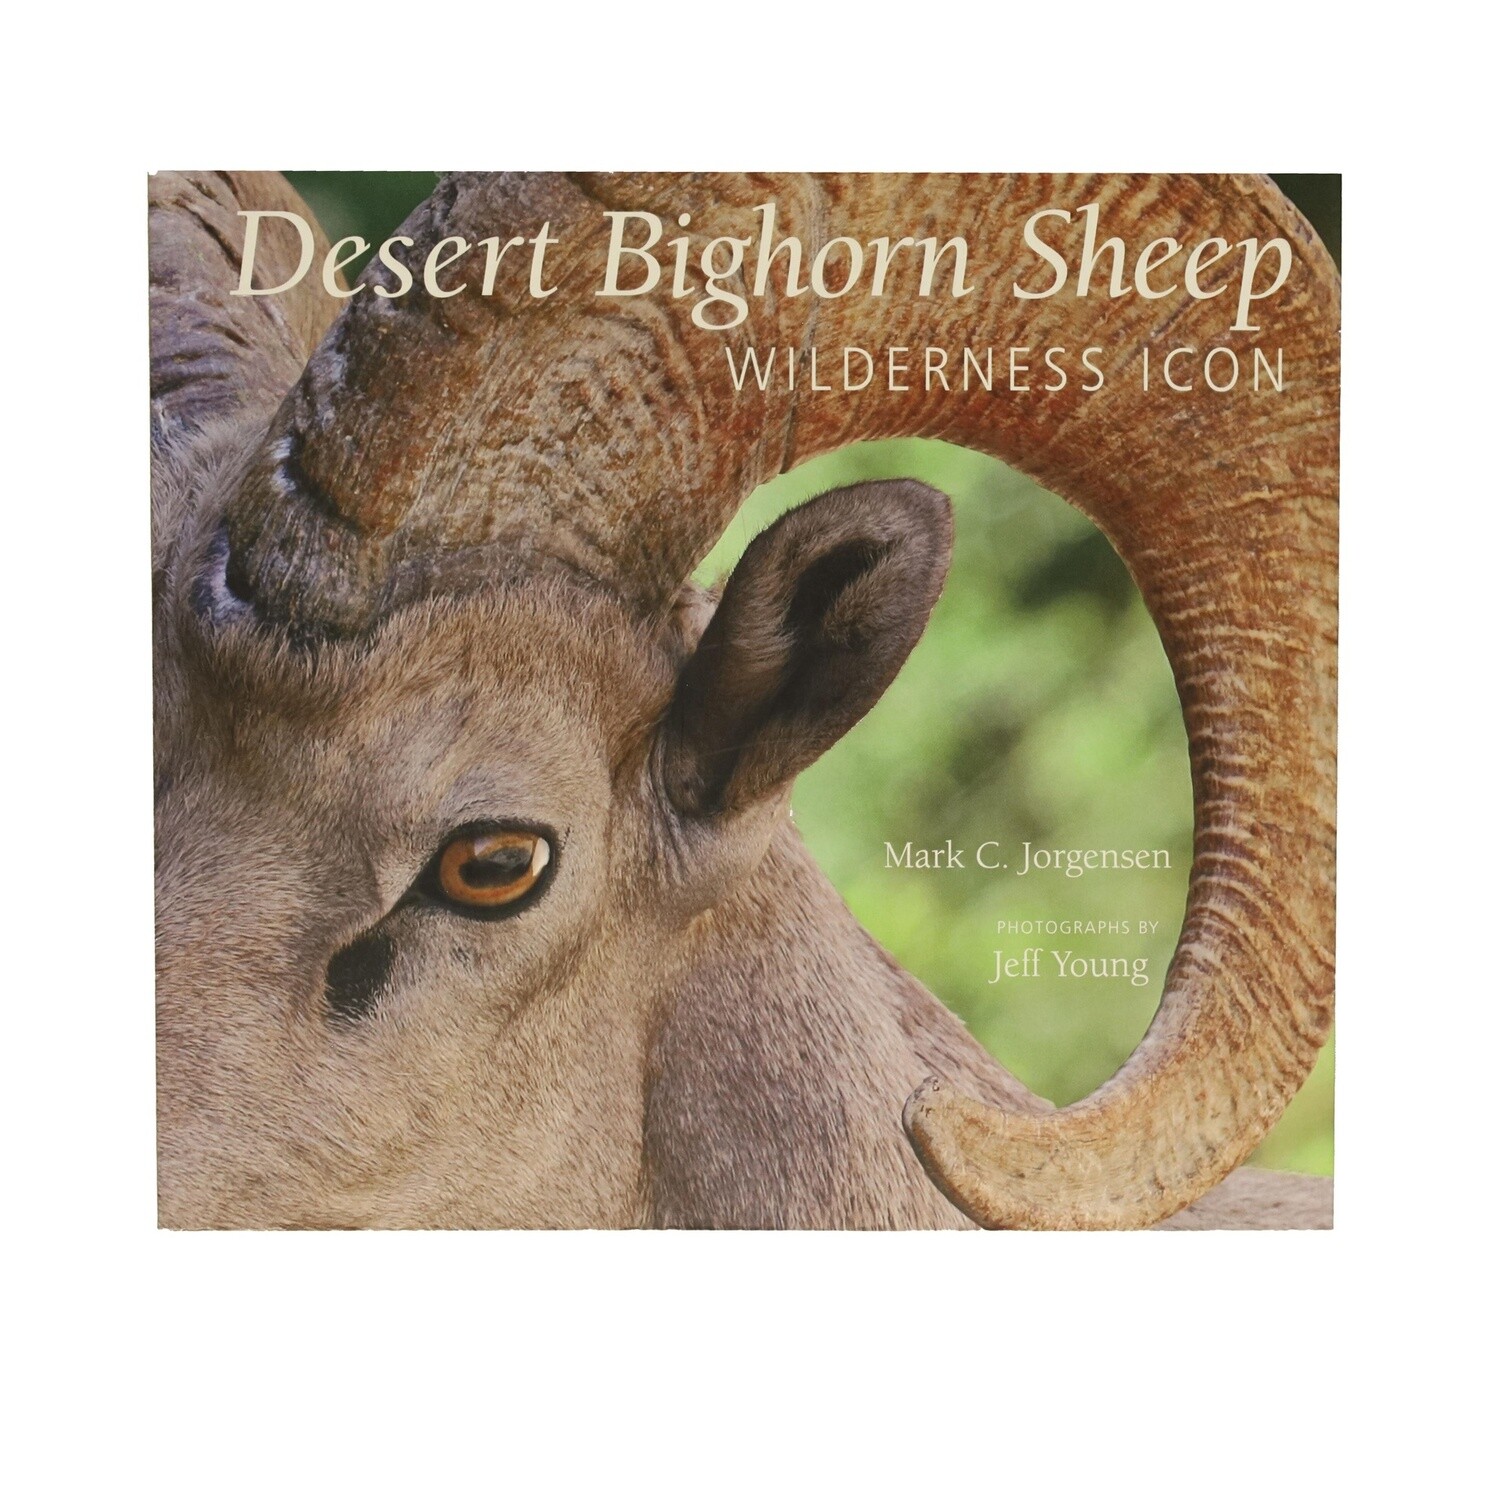 Desert Bighorn Sheep by Mark C. Jorgensen